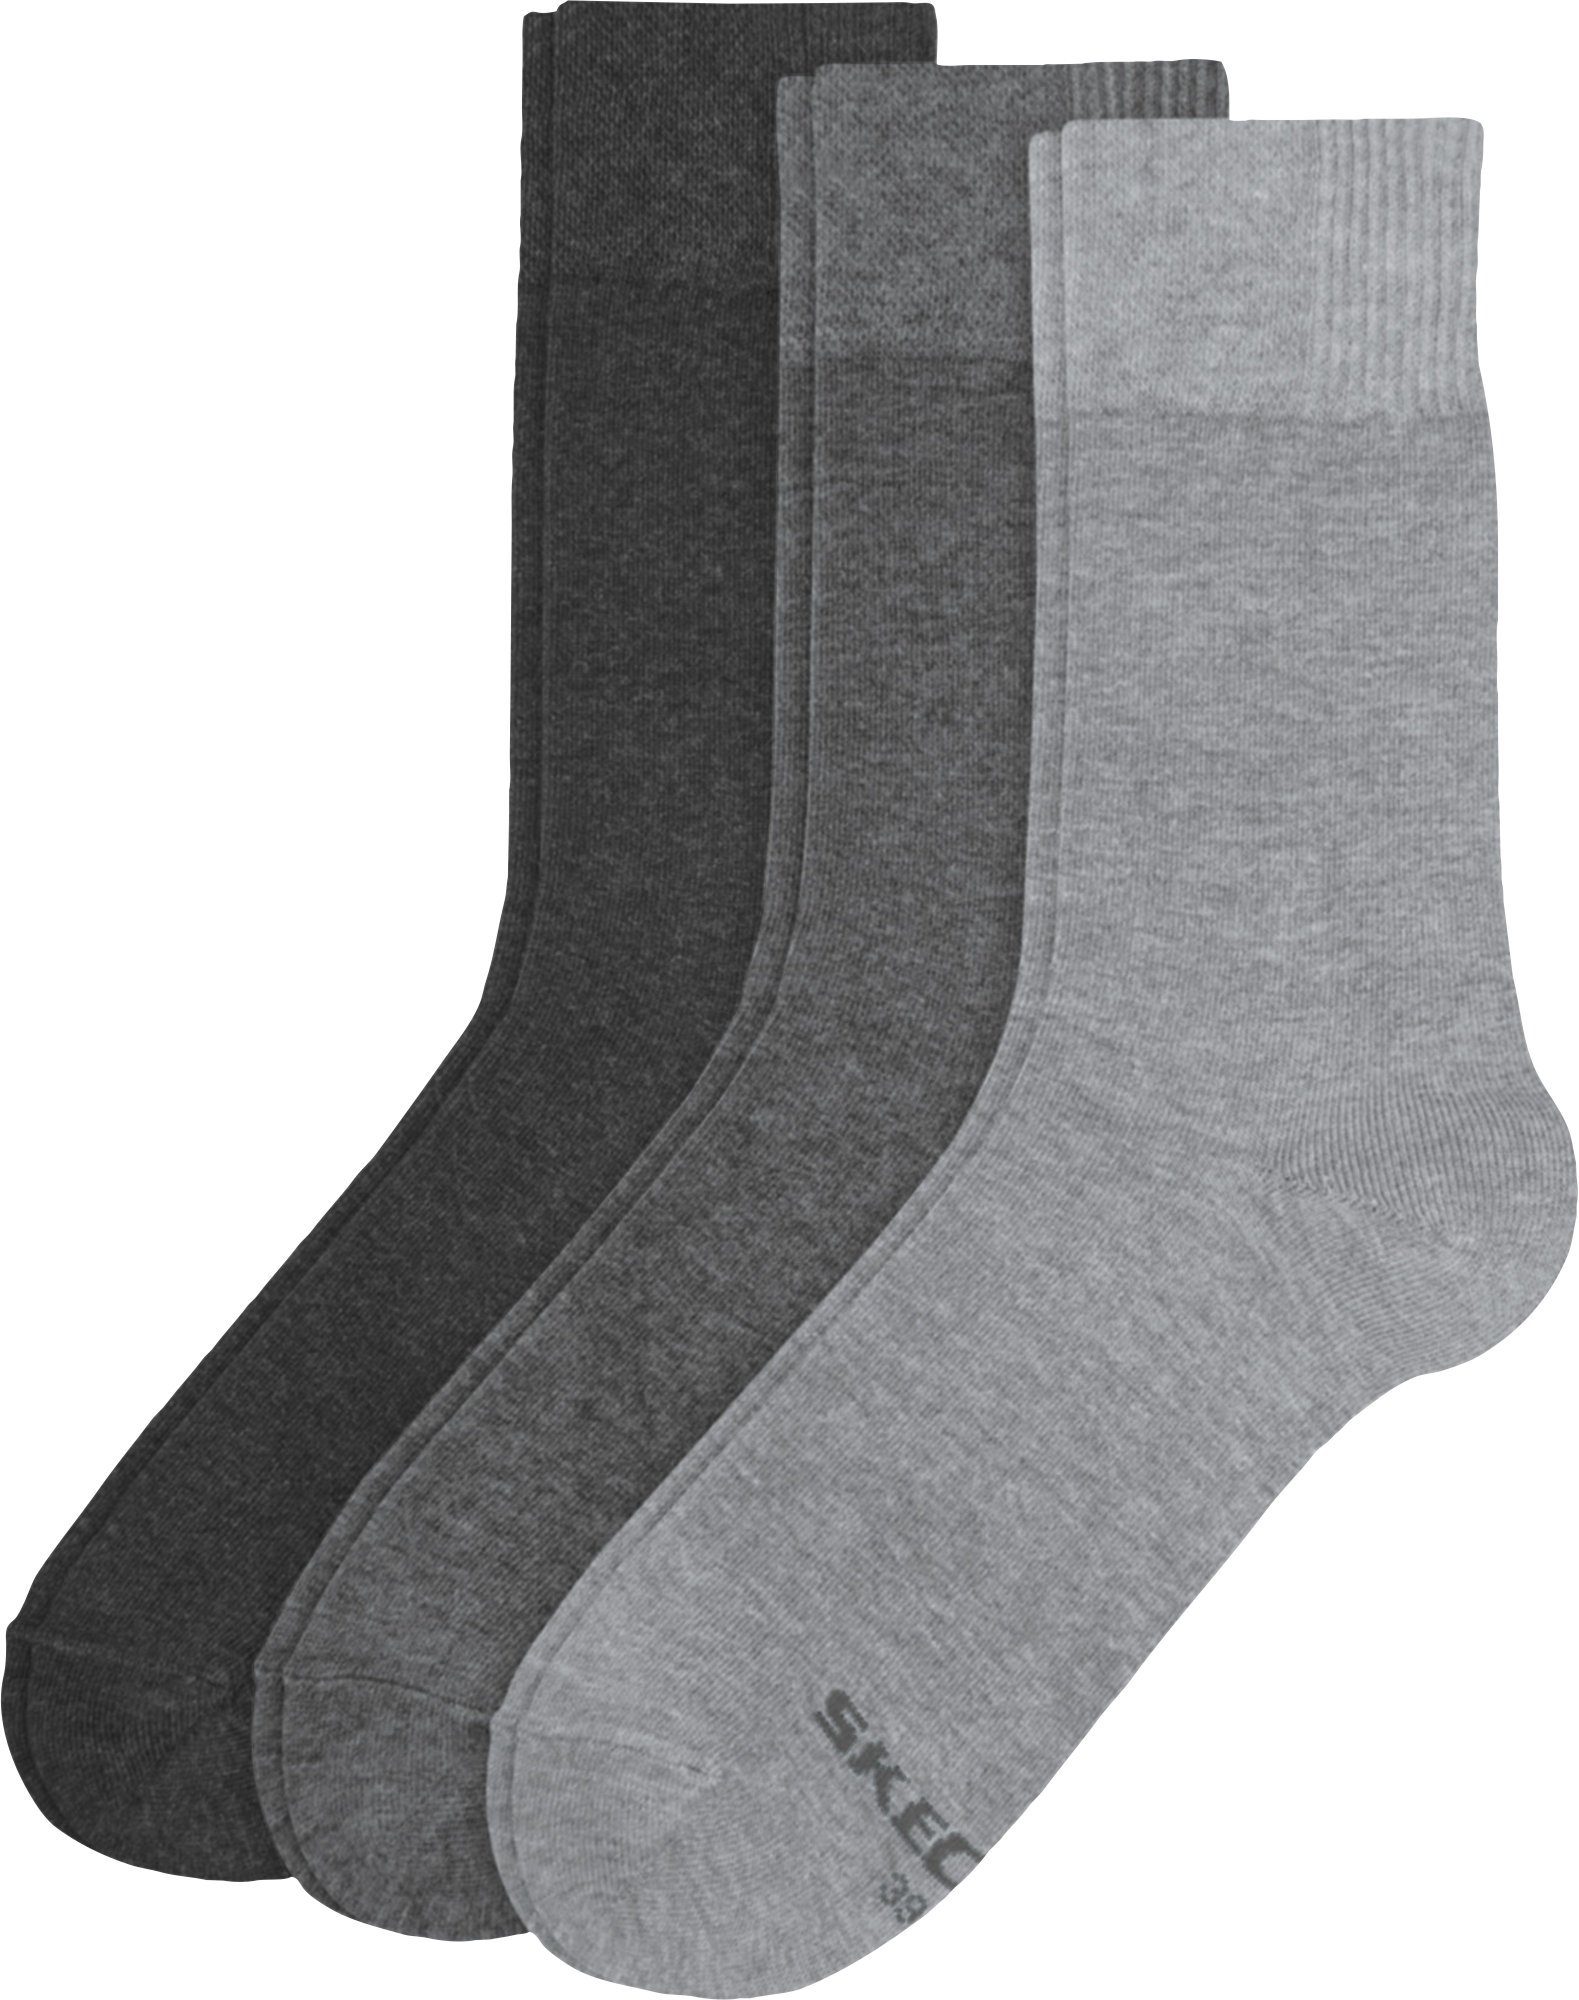 Socken grau Uni Paar Skechers 3 Herren-Socken